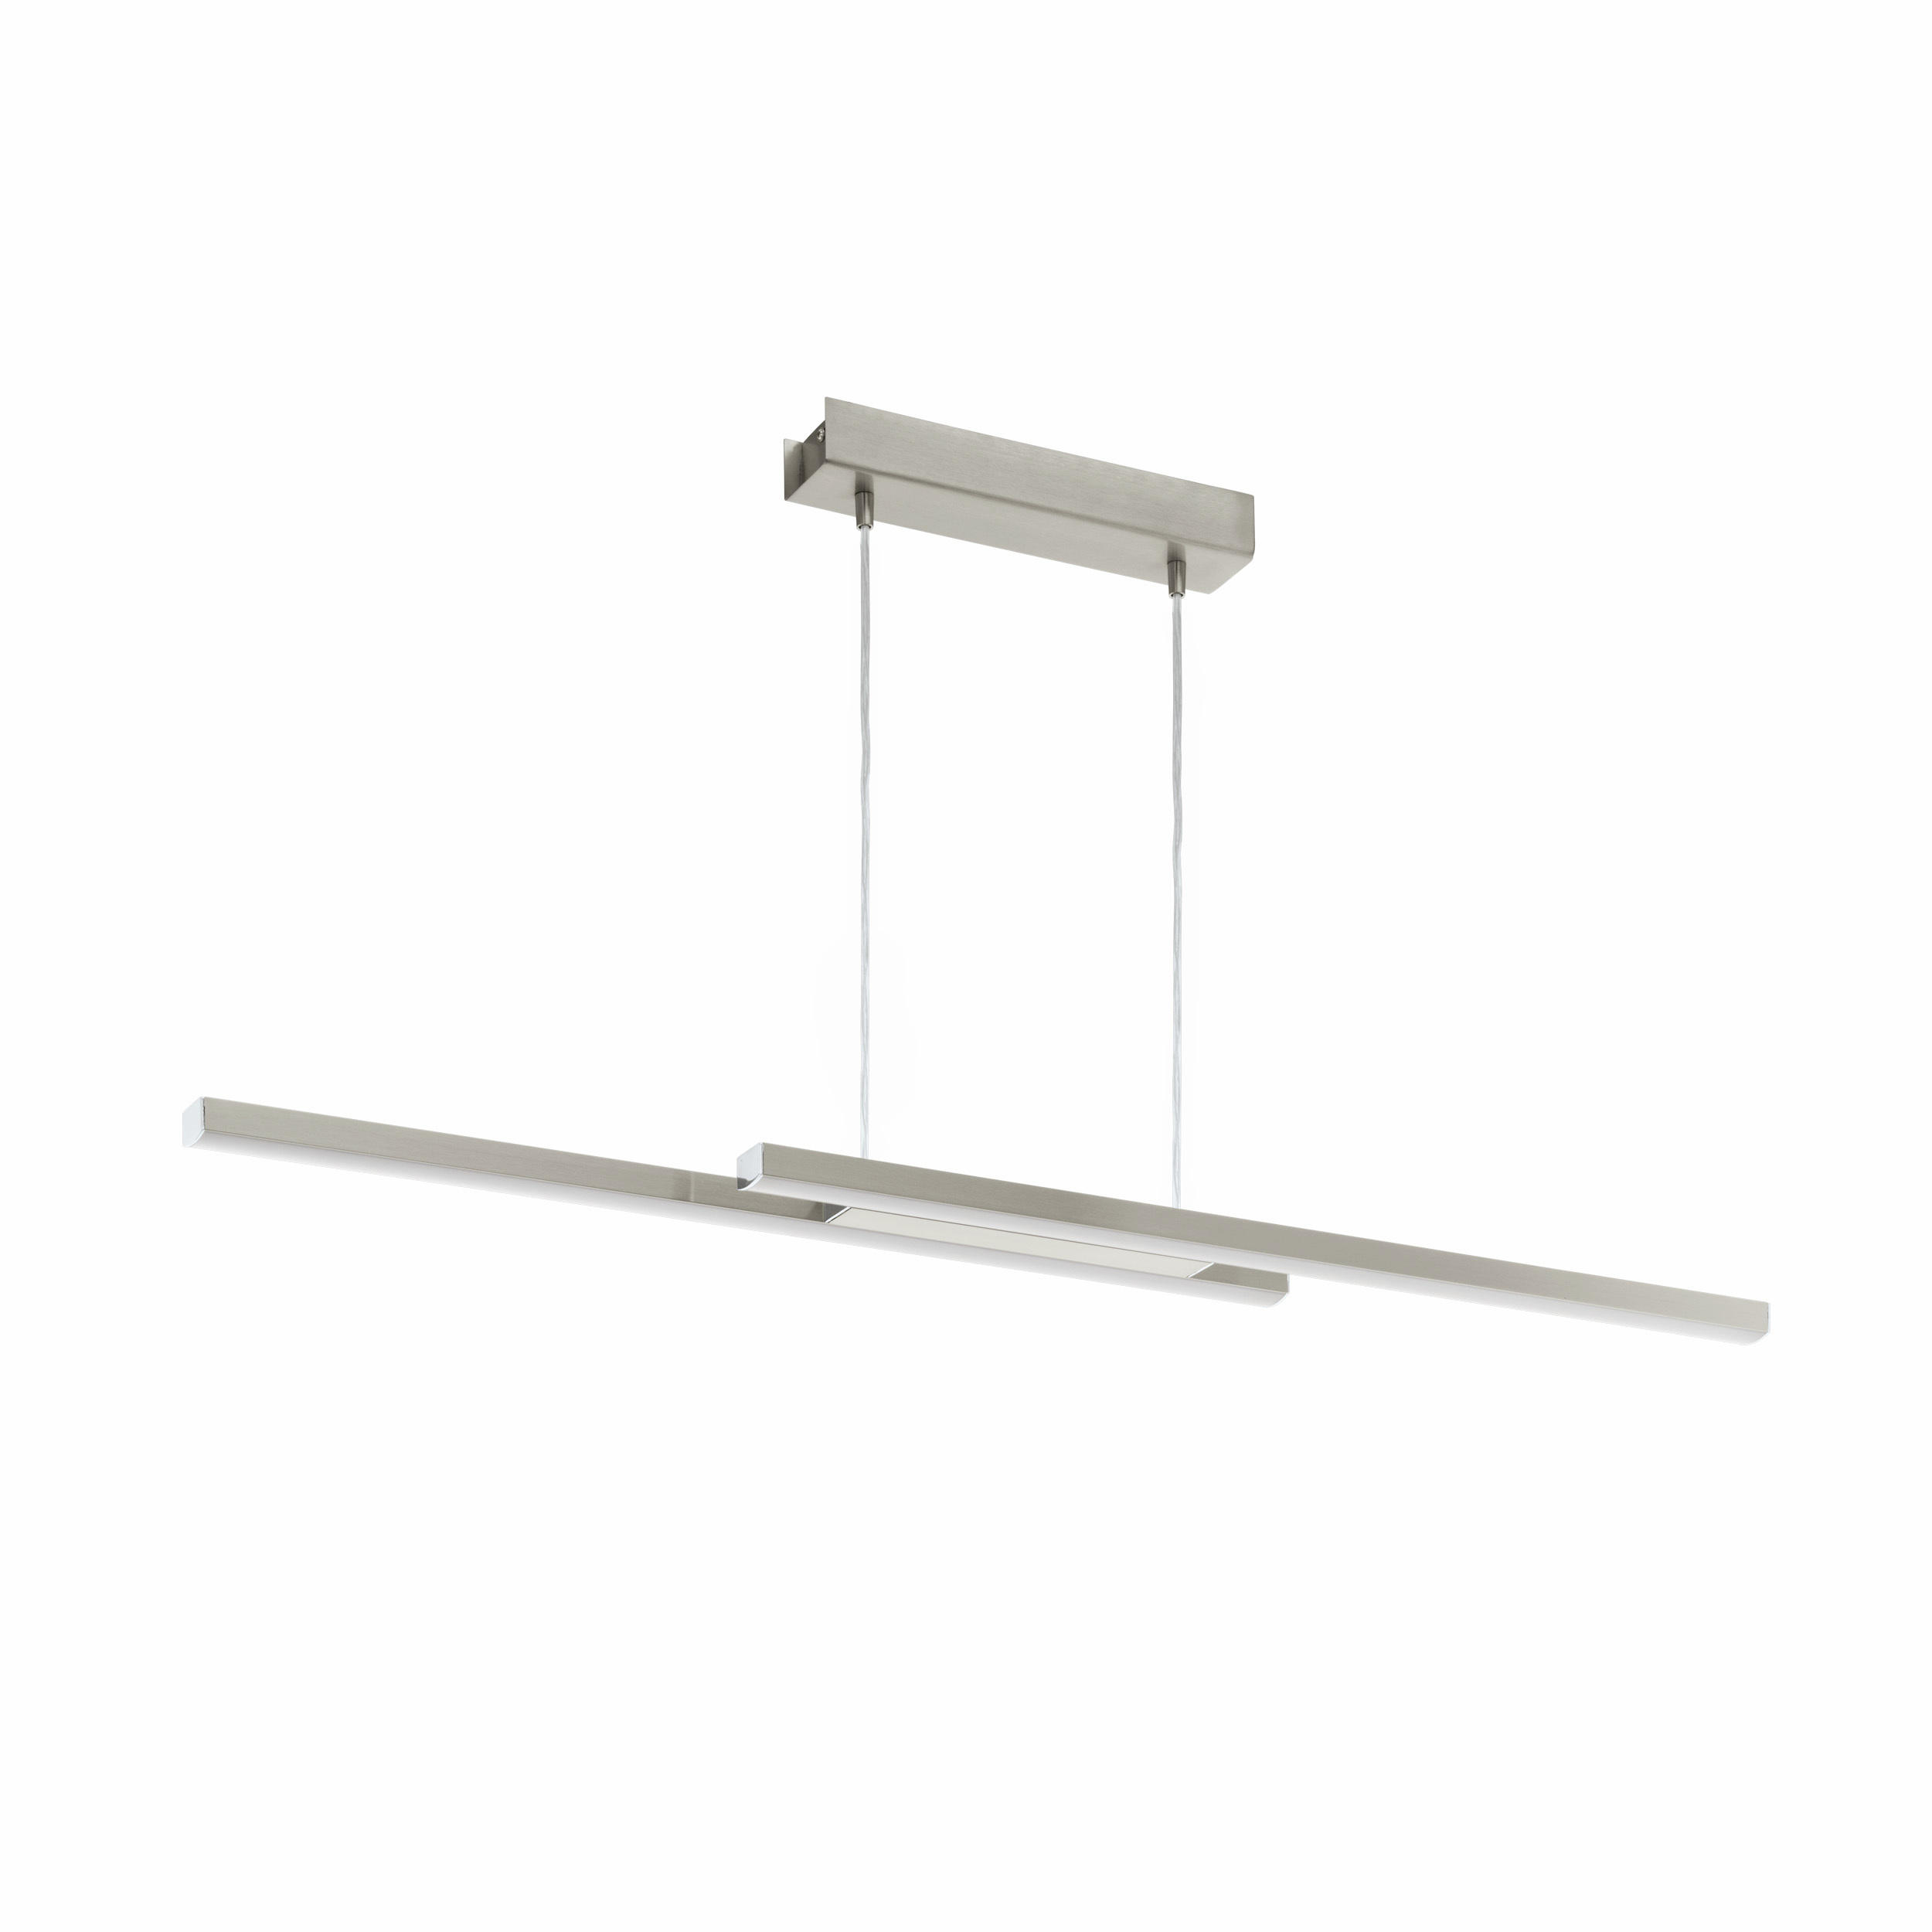 LED-HÄNGELEUCHTE Fraioli-Z  - Weiß/Nickelfarben, Design, Kunststoff/Metall (105,5/10/120cm) - Eglo